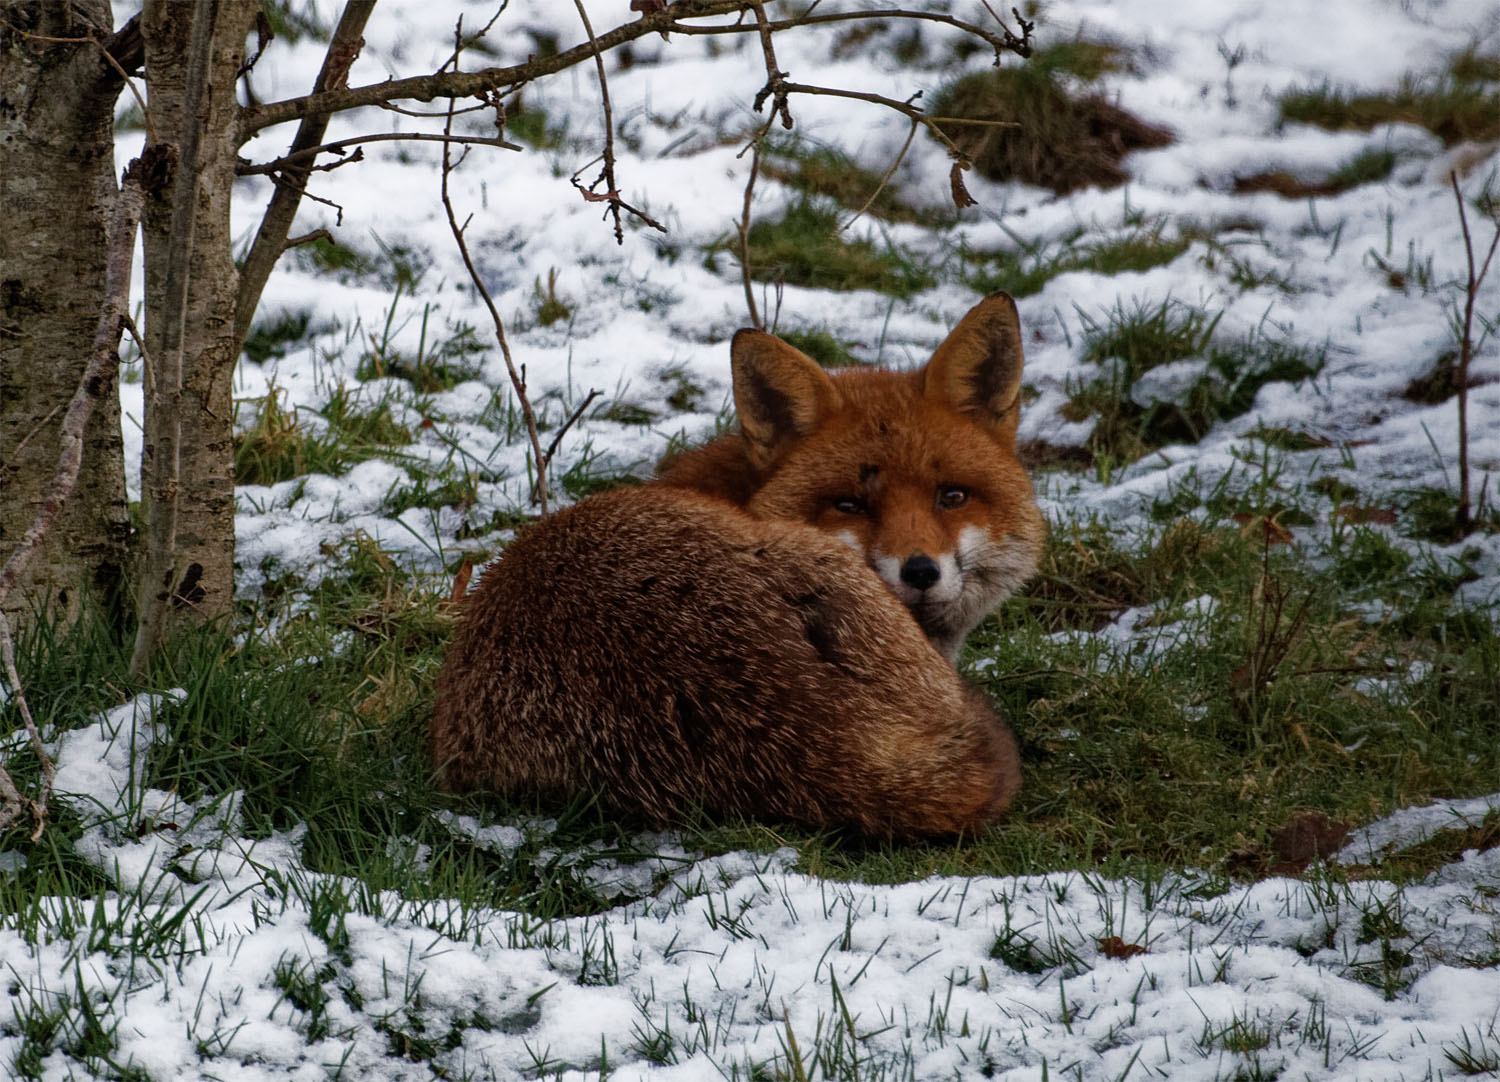 Fox snow rest 7 Jan 20